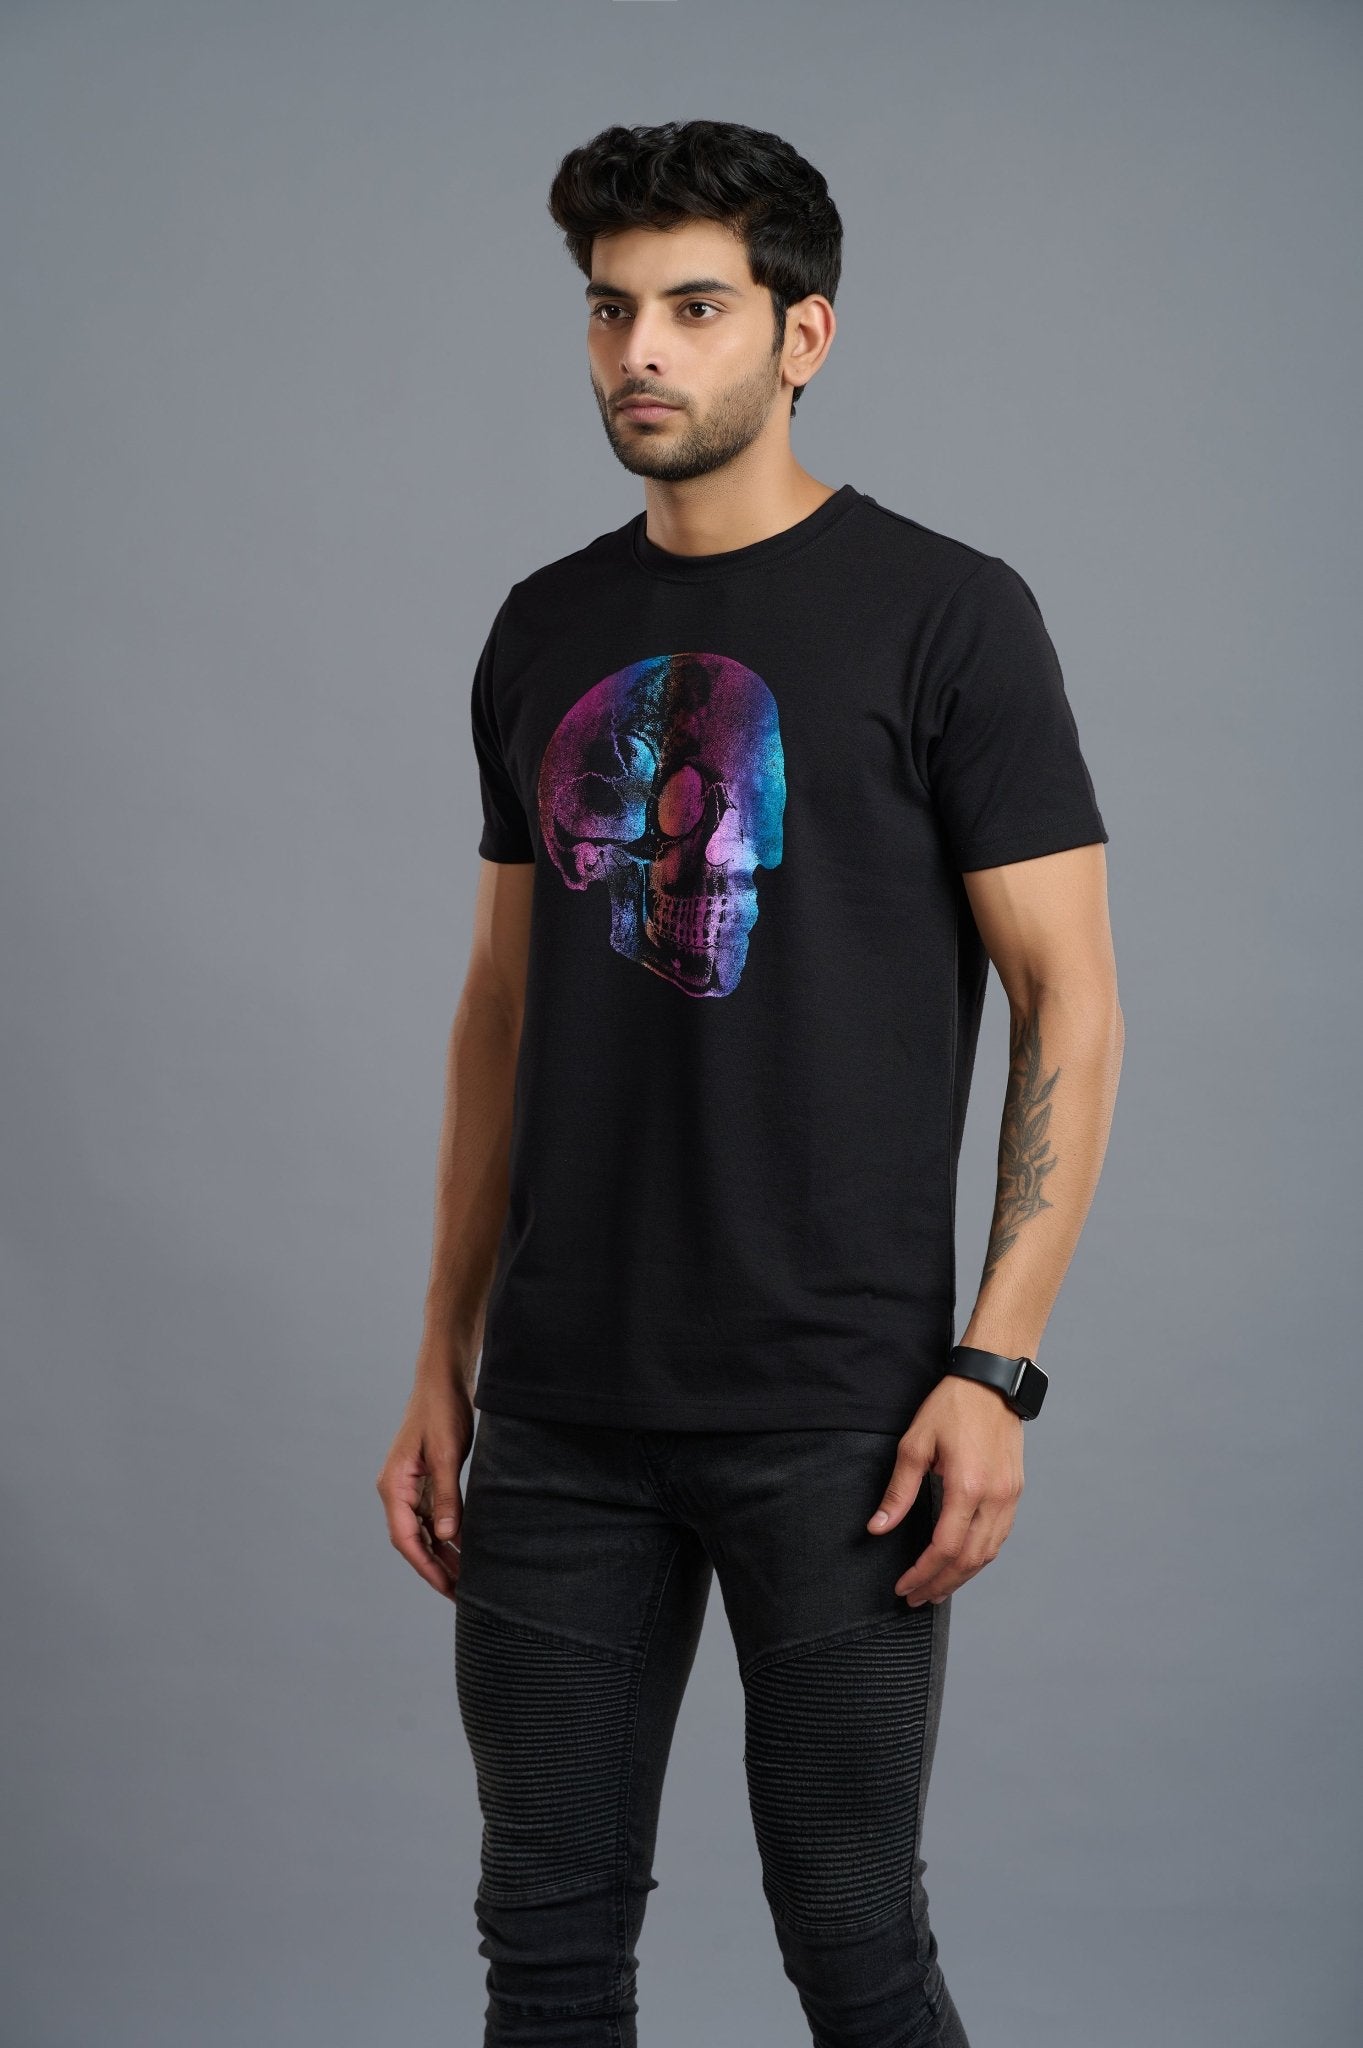 Multi-color Skull Printed T-Shirt for Men - Go Devil